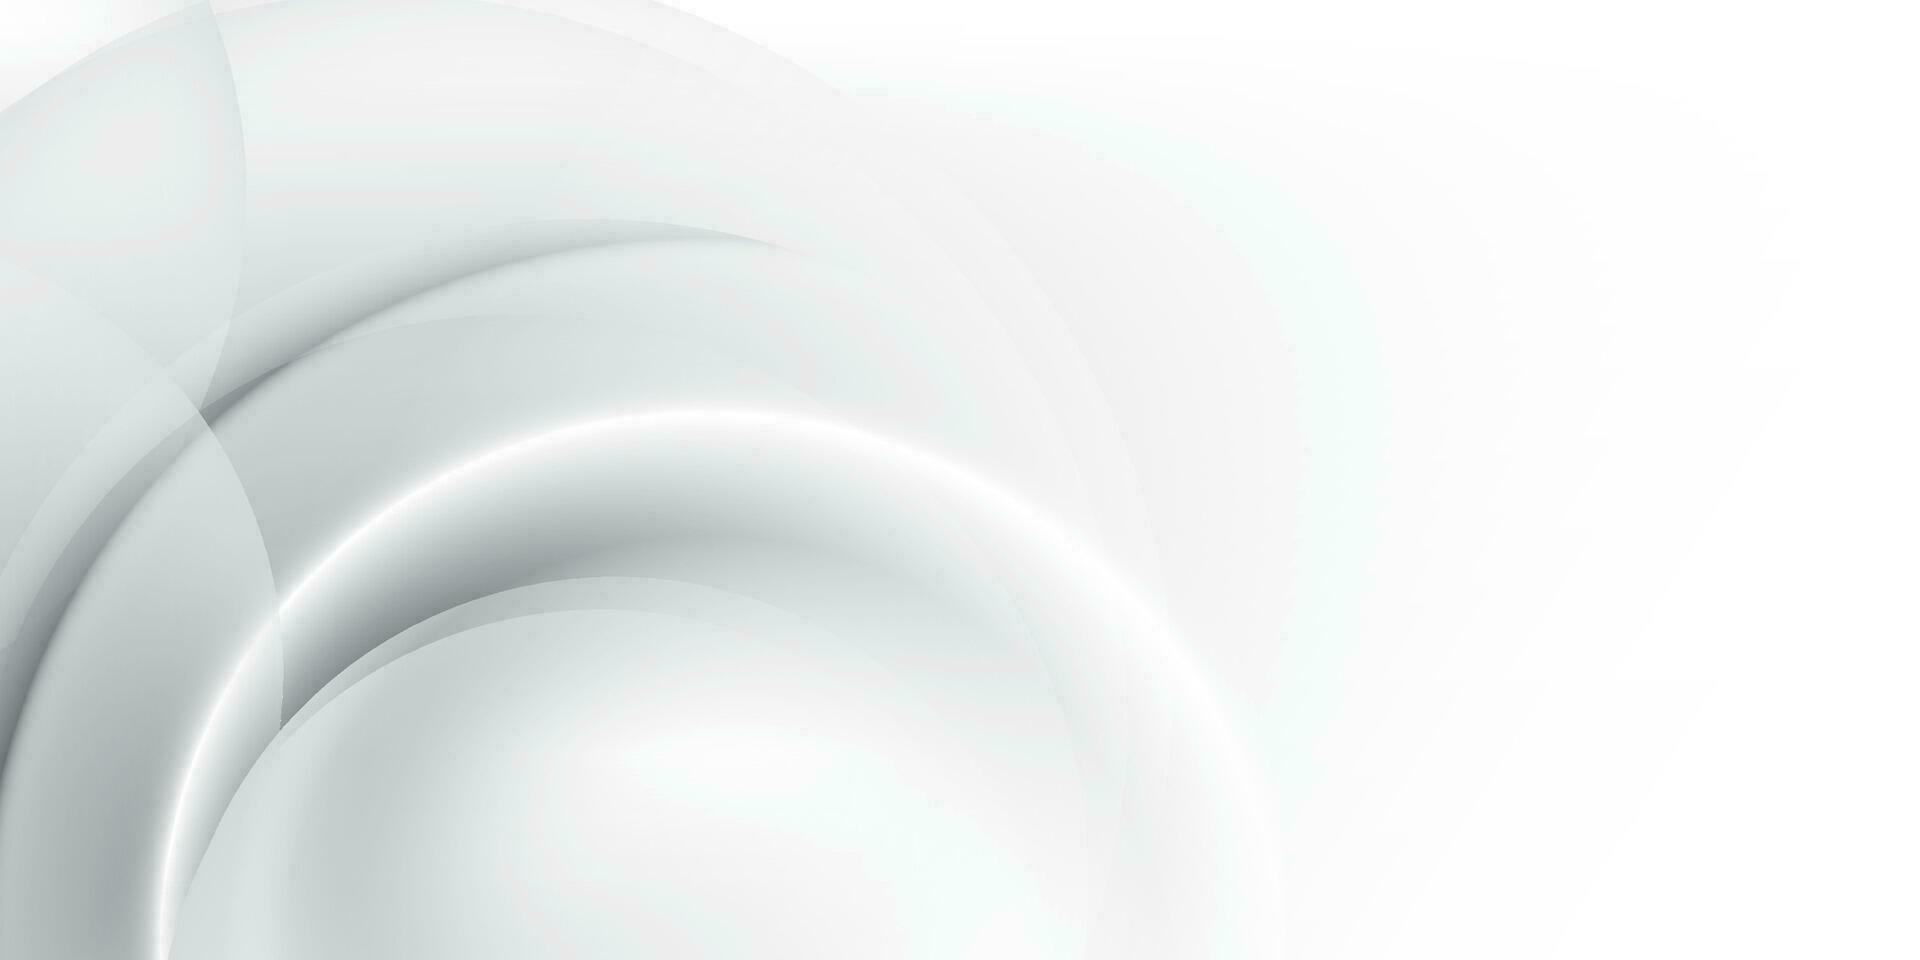 astratto bianca e grigio colore sfondo con geometrico il giro forma. vettore illustrazione.